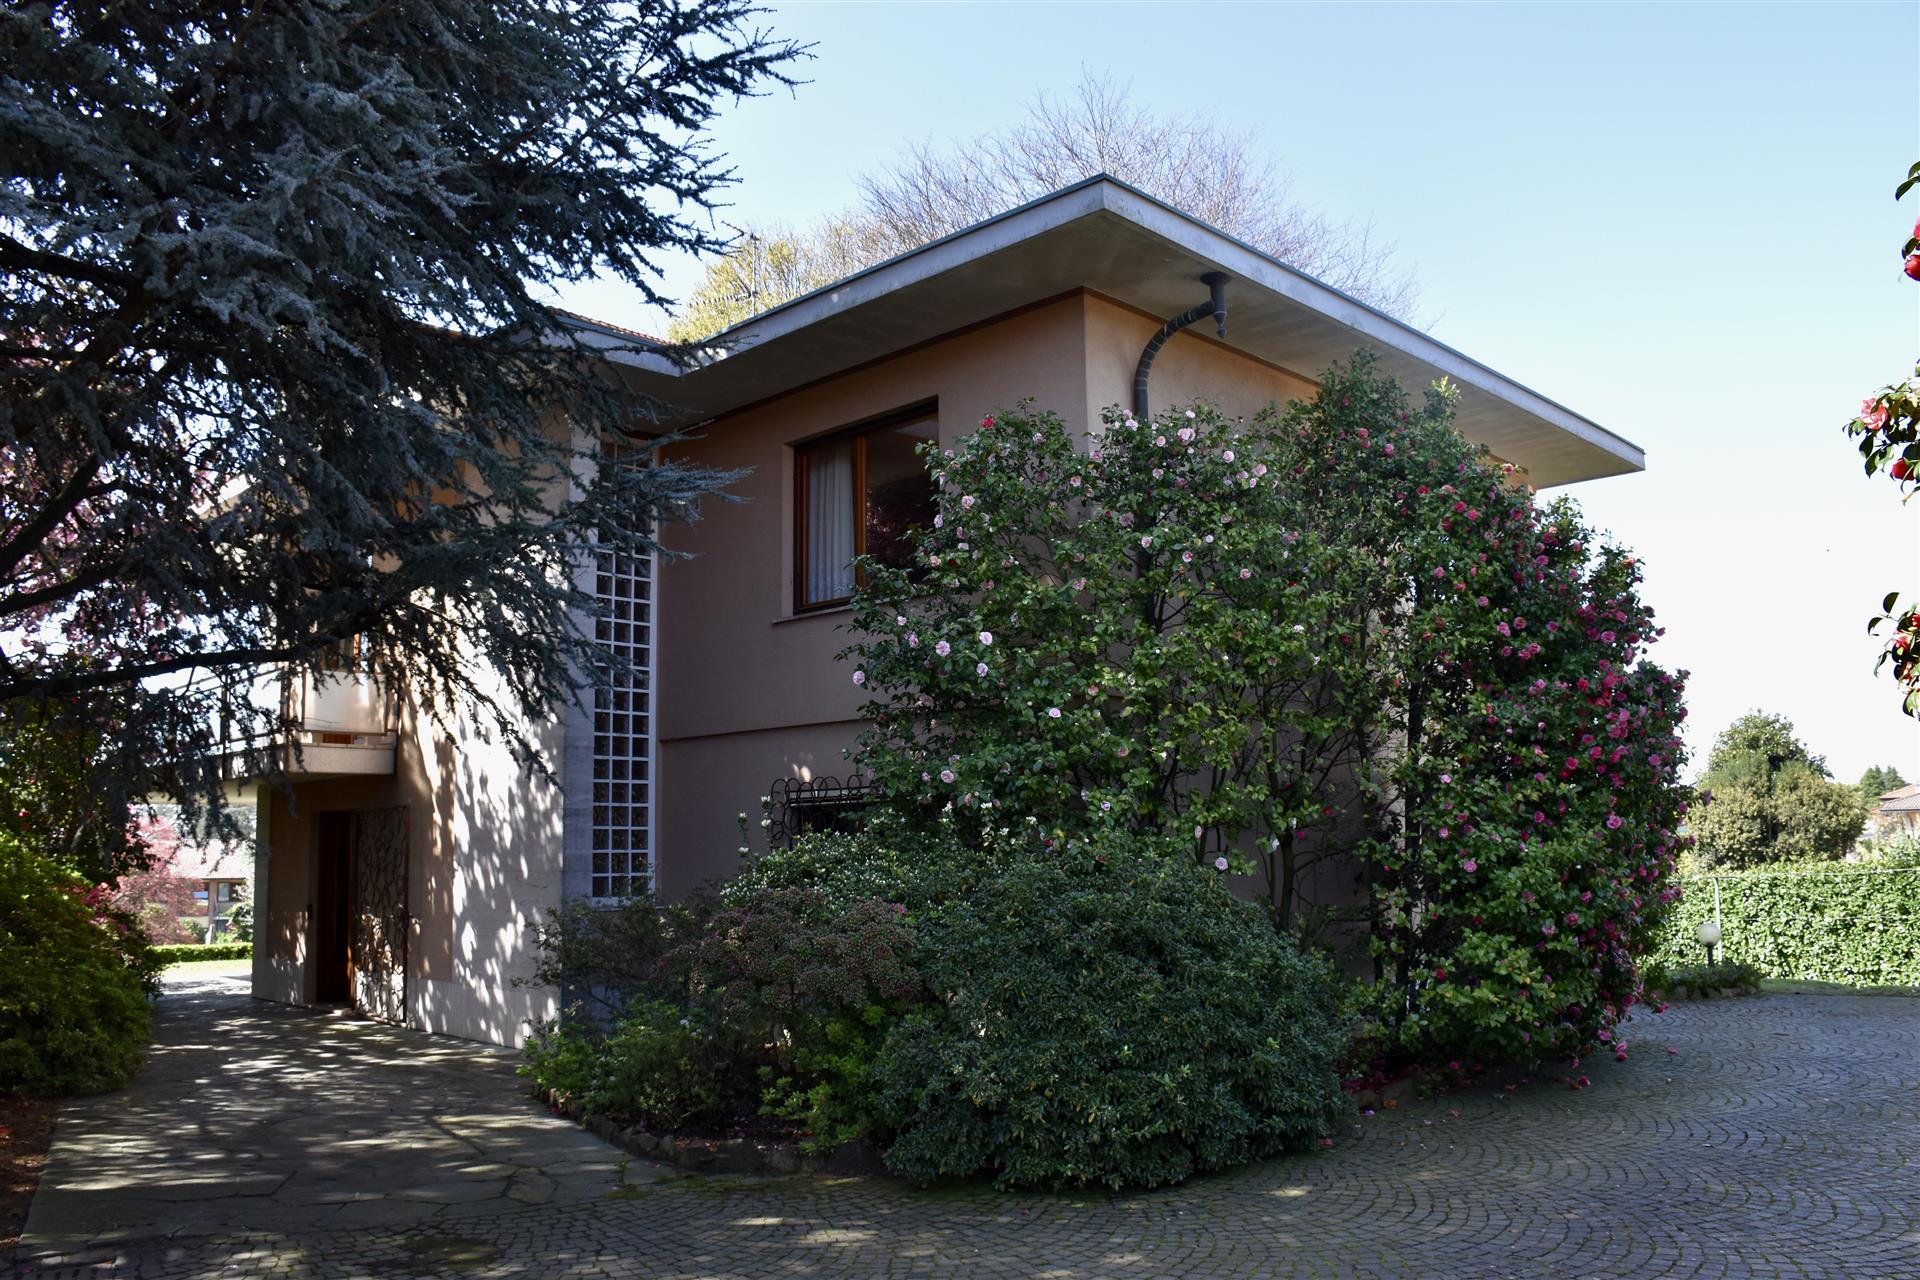 Villa with private garden in Castronno